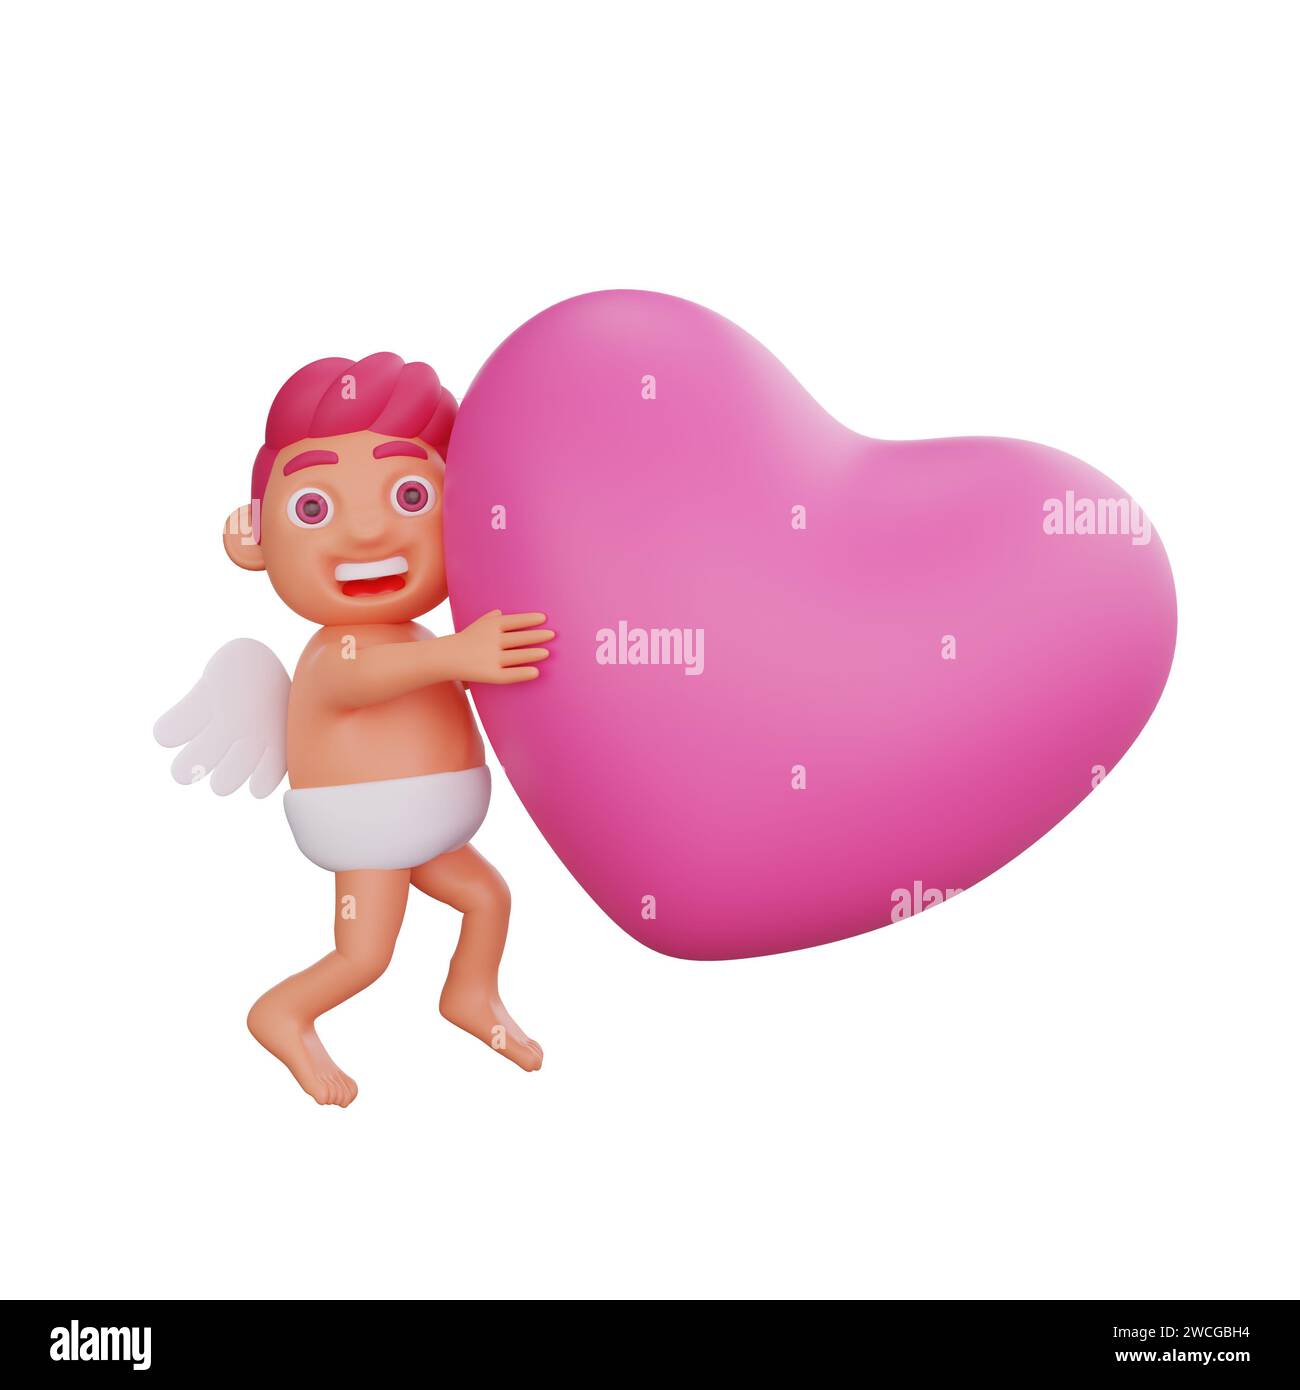 Illustrazione in 3D del personaggio di San Valentino Cupido che abbraccia un cuore rosa vibrante, simboleggia amore e affetto, perfetto per San Valentino o projec a tema amoroso Foto Stock